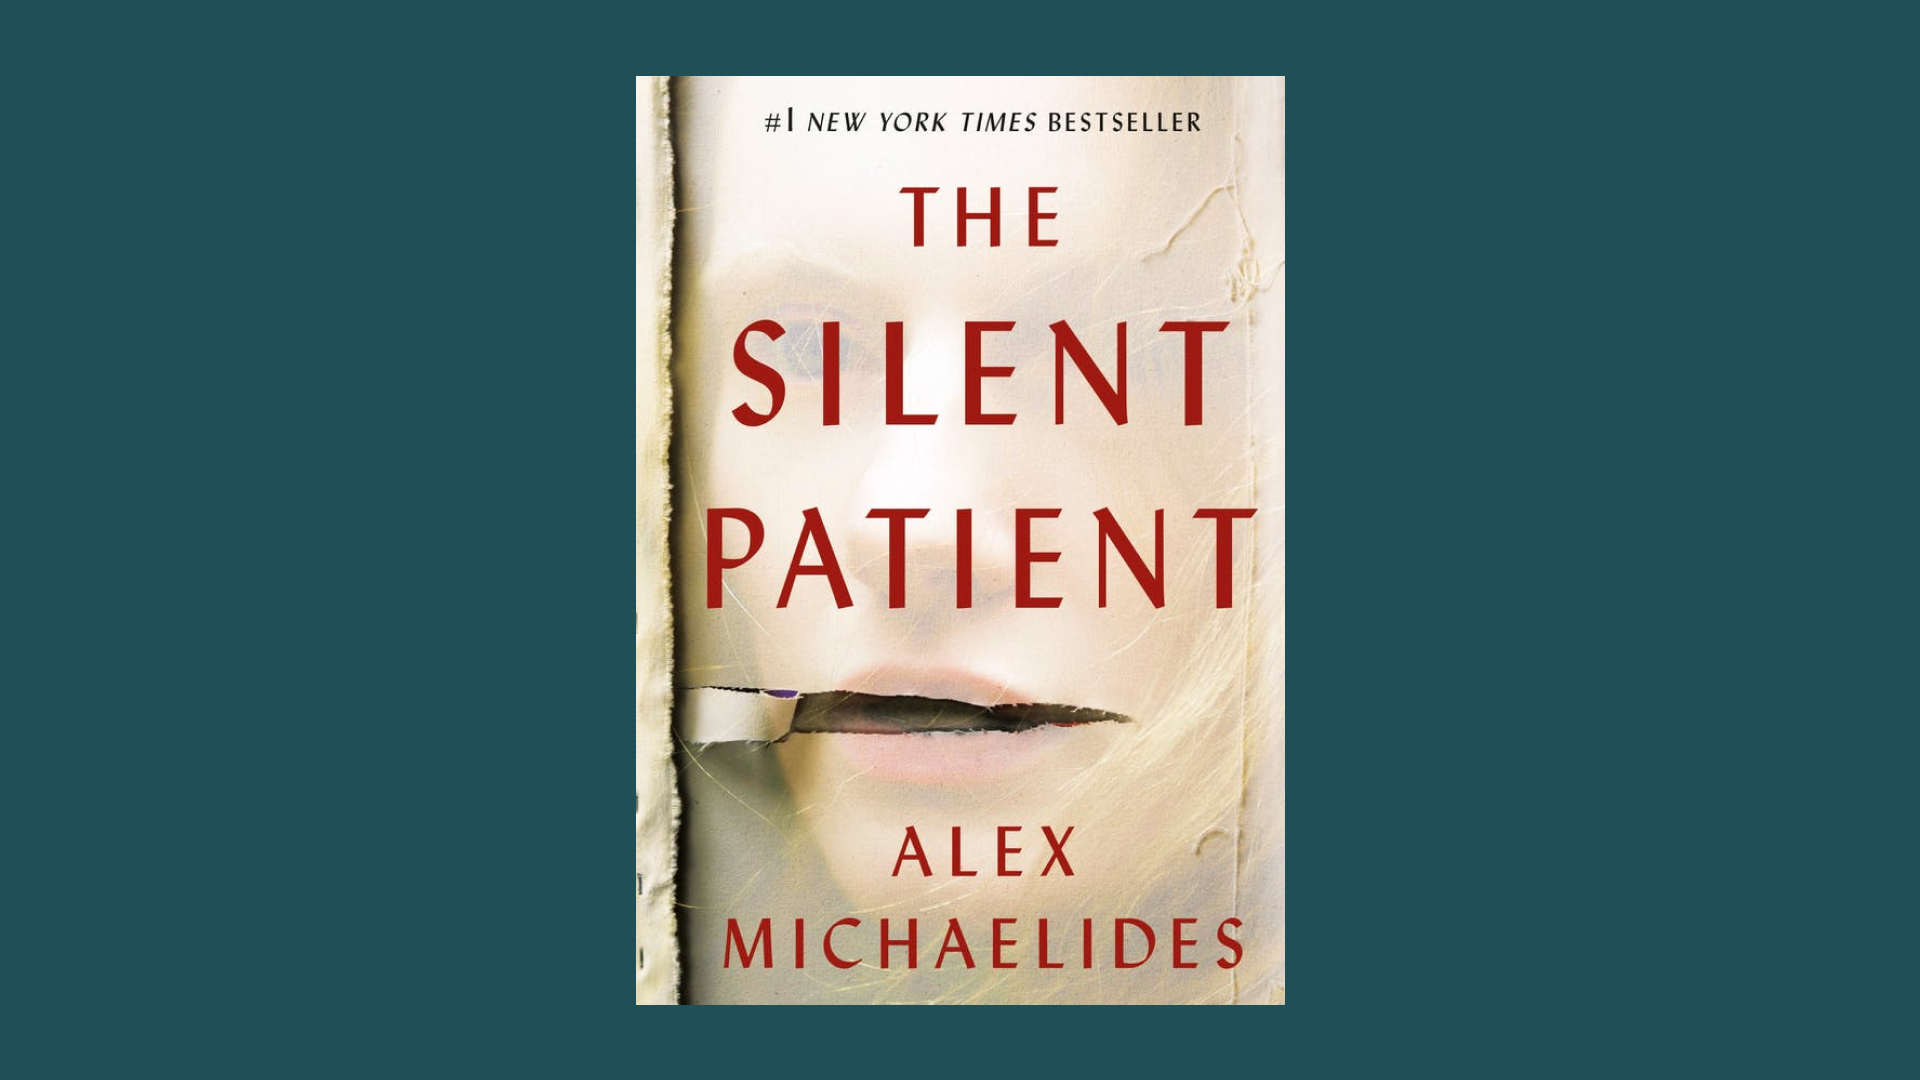 “The Silent Patient” by Alex Michaelides 